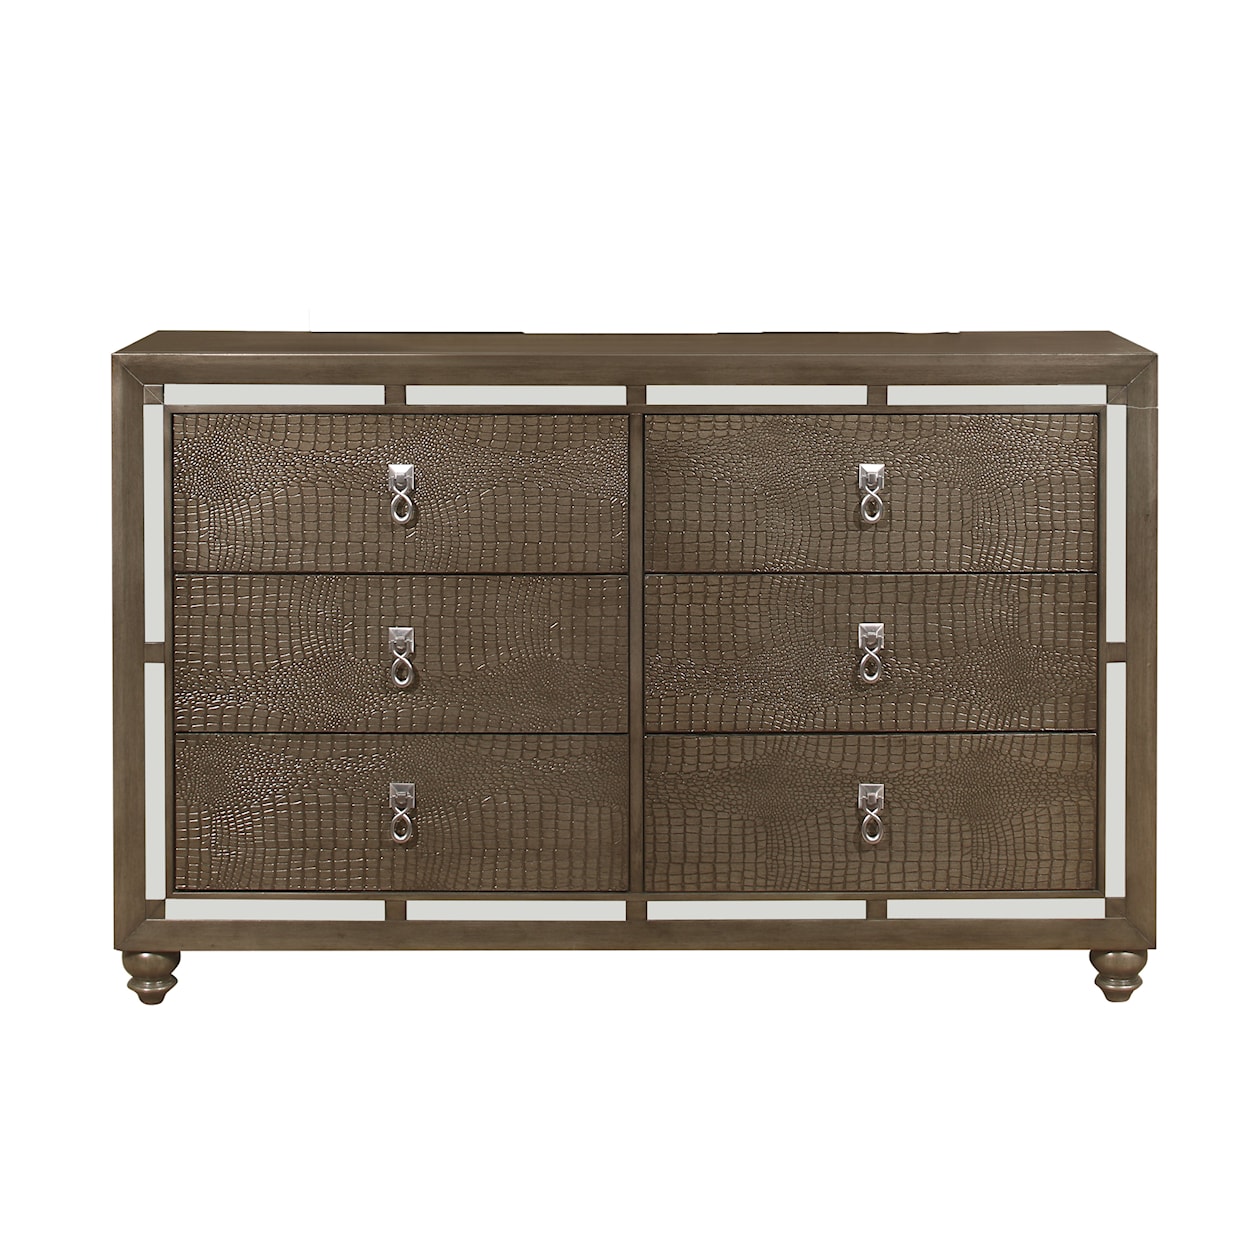 Global Furniture Ivy 6-Drawer Dresser